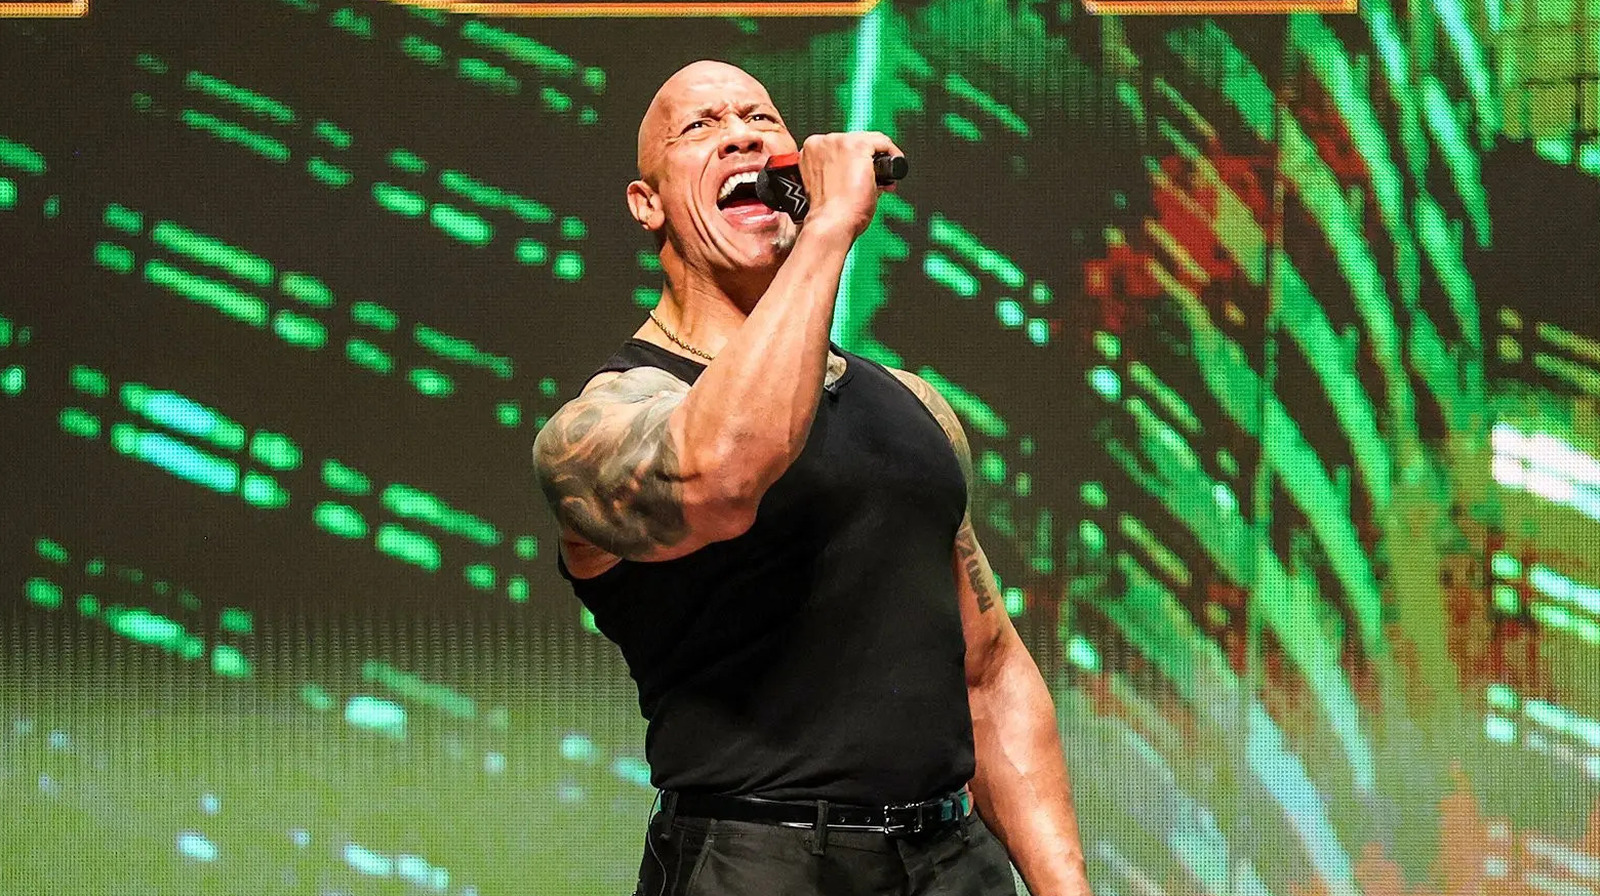 Noticias detrás del escenario sobre quién lanzó el Heel Turn de The Rock en la WWE